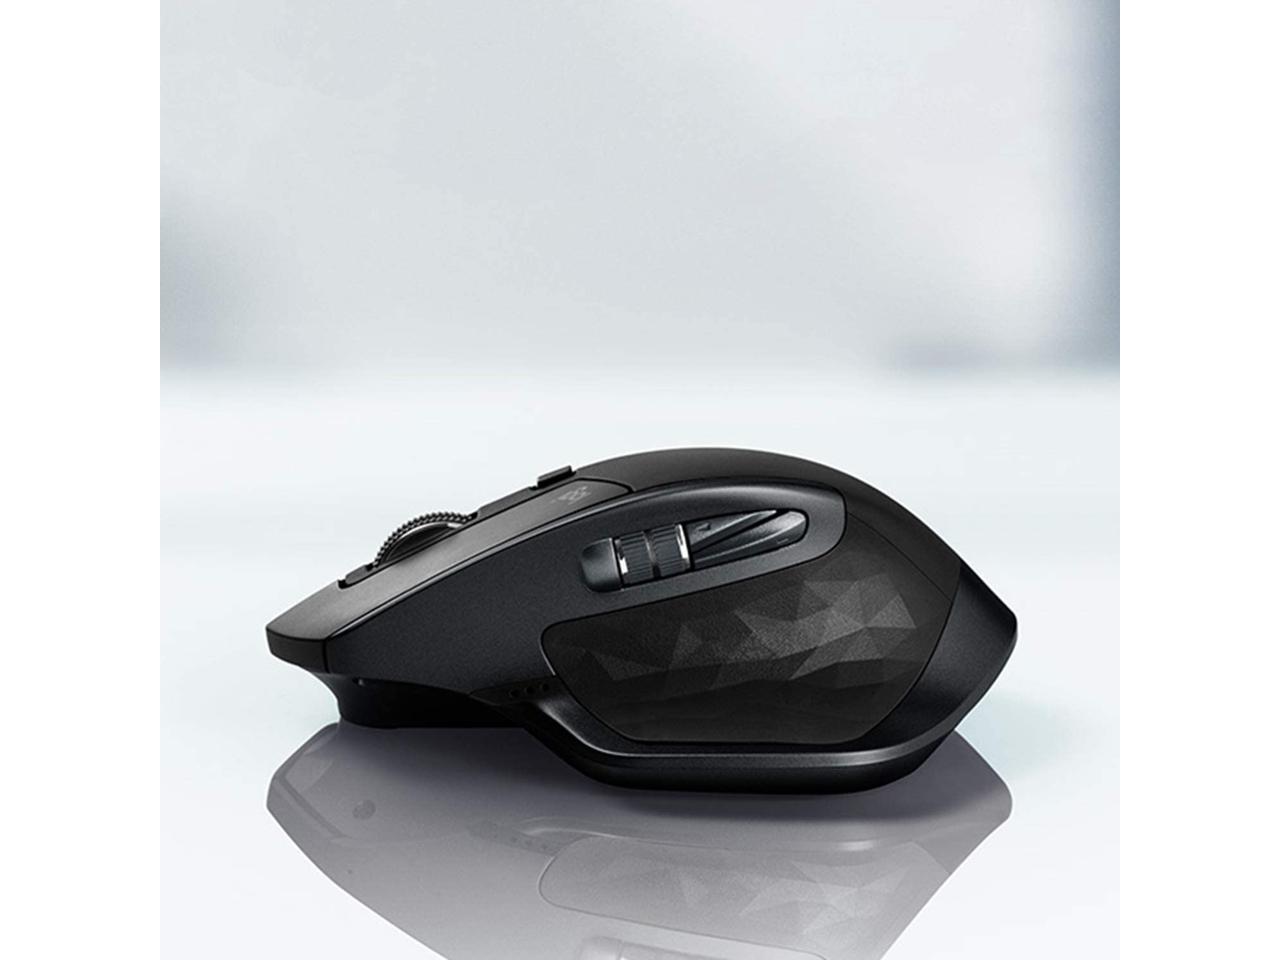 MX900 Wireless Keyboard and Mouse Bundle Logitech 